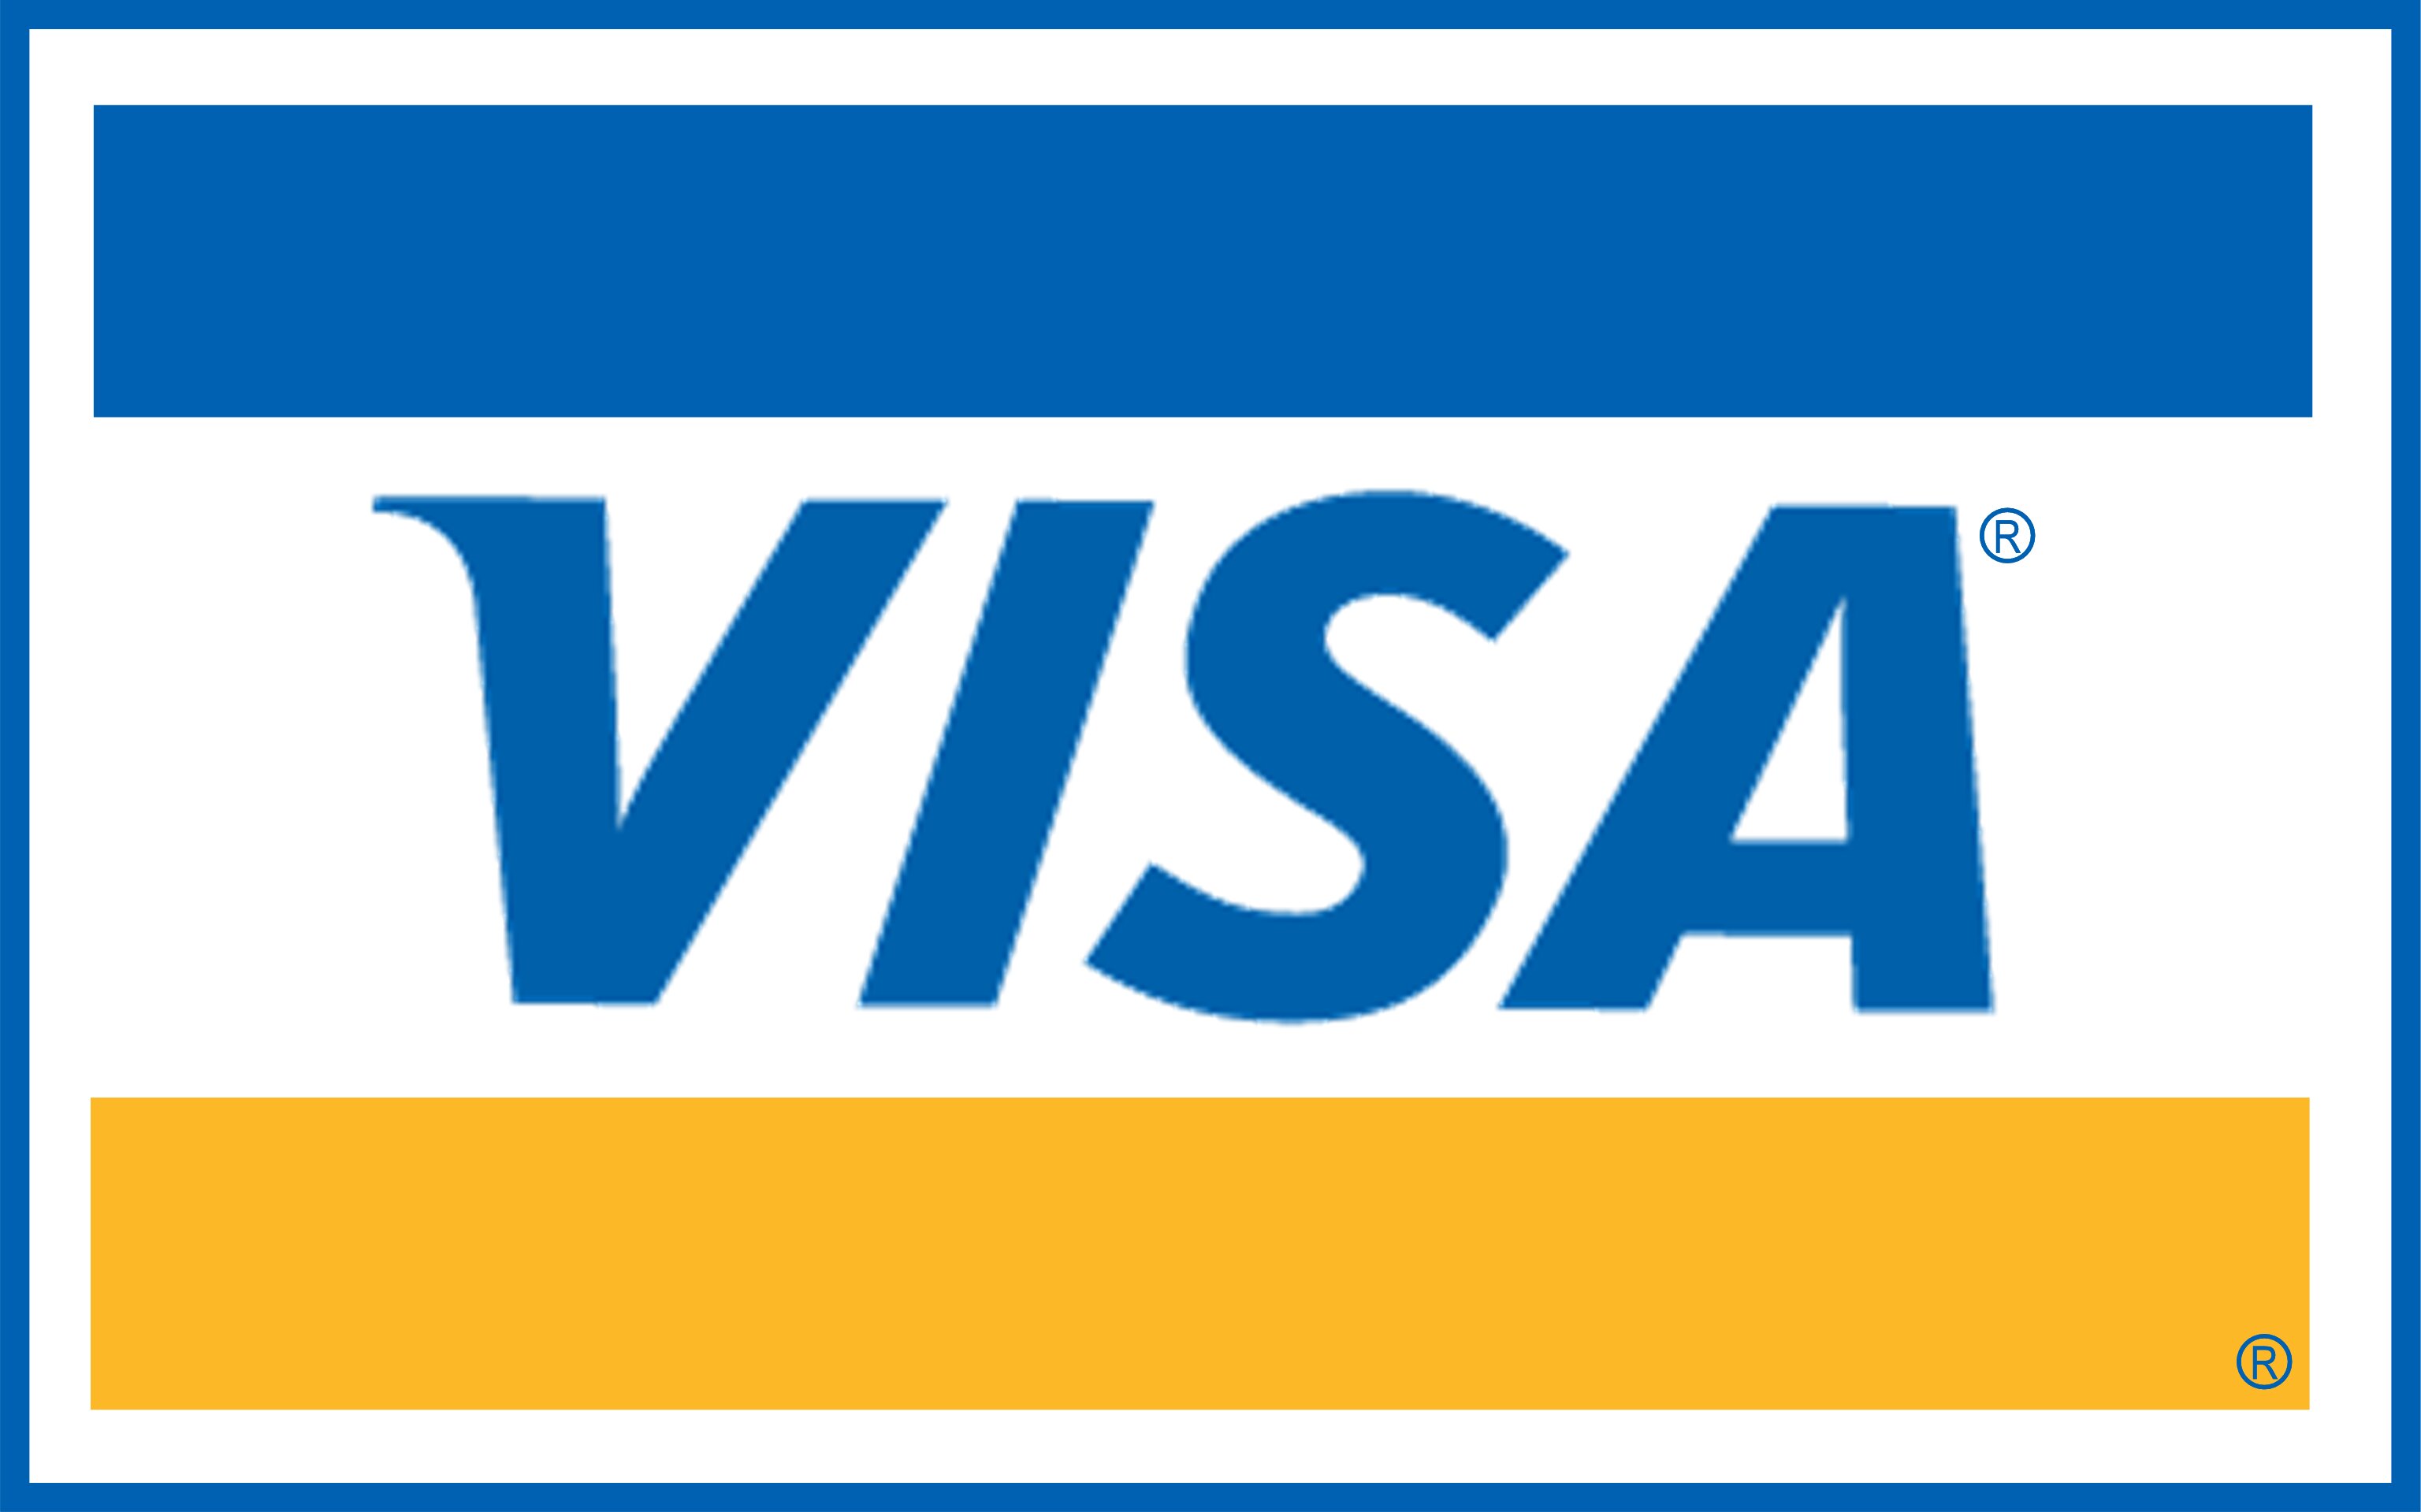 Thẻ Visa là thẻ được công nhận trên toàn cầu